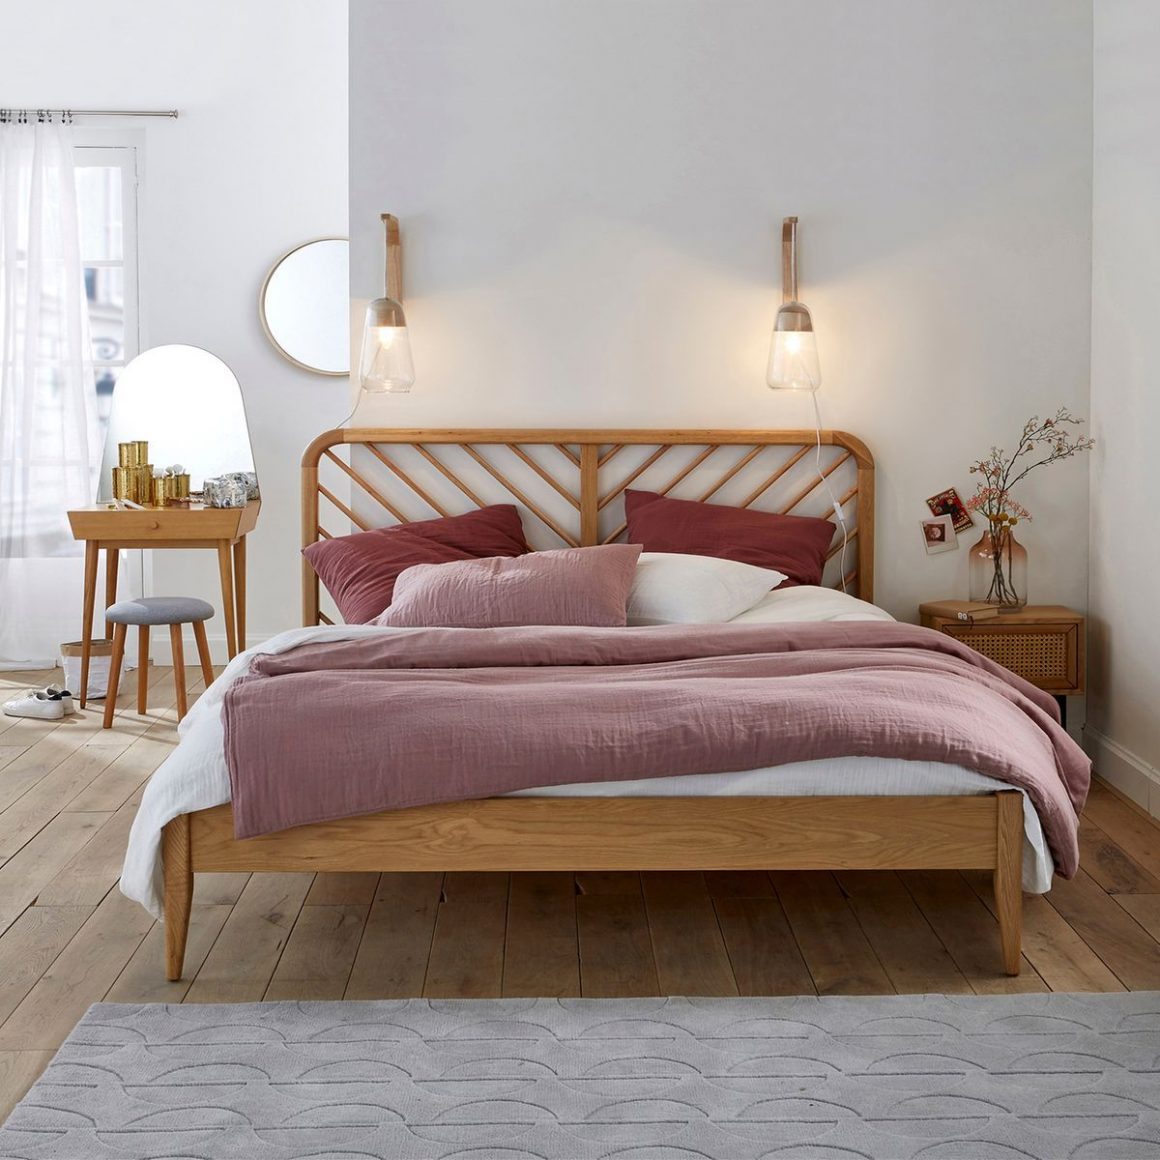 La déco chambre tendance se compose d'un lit double de style scandinave, avec une tête de lit en rotin